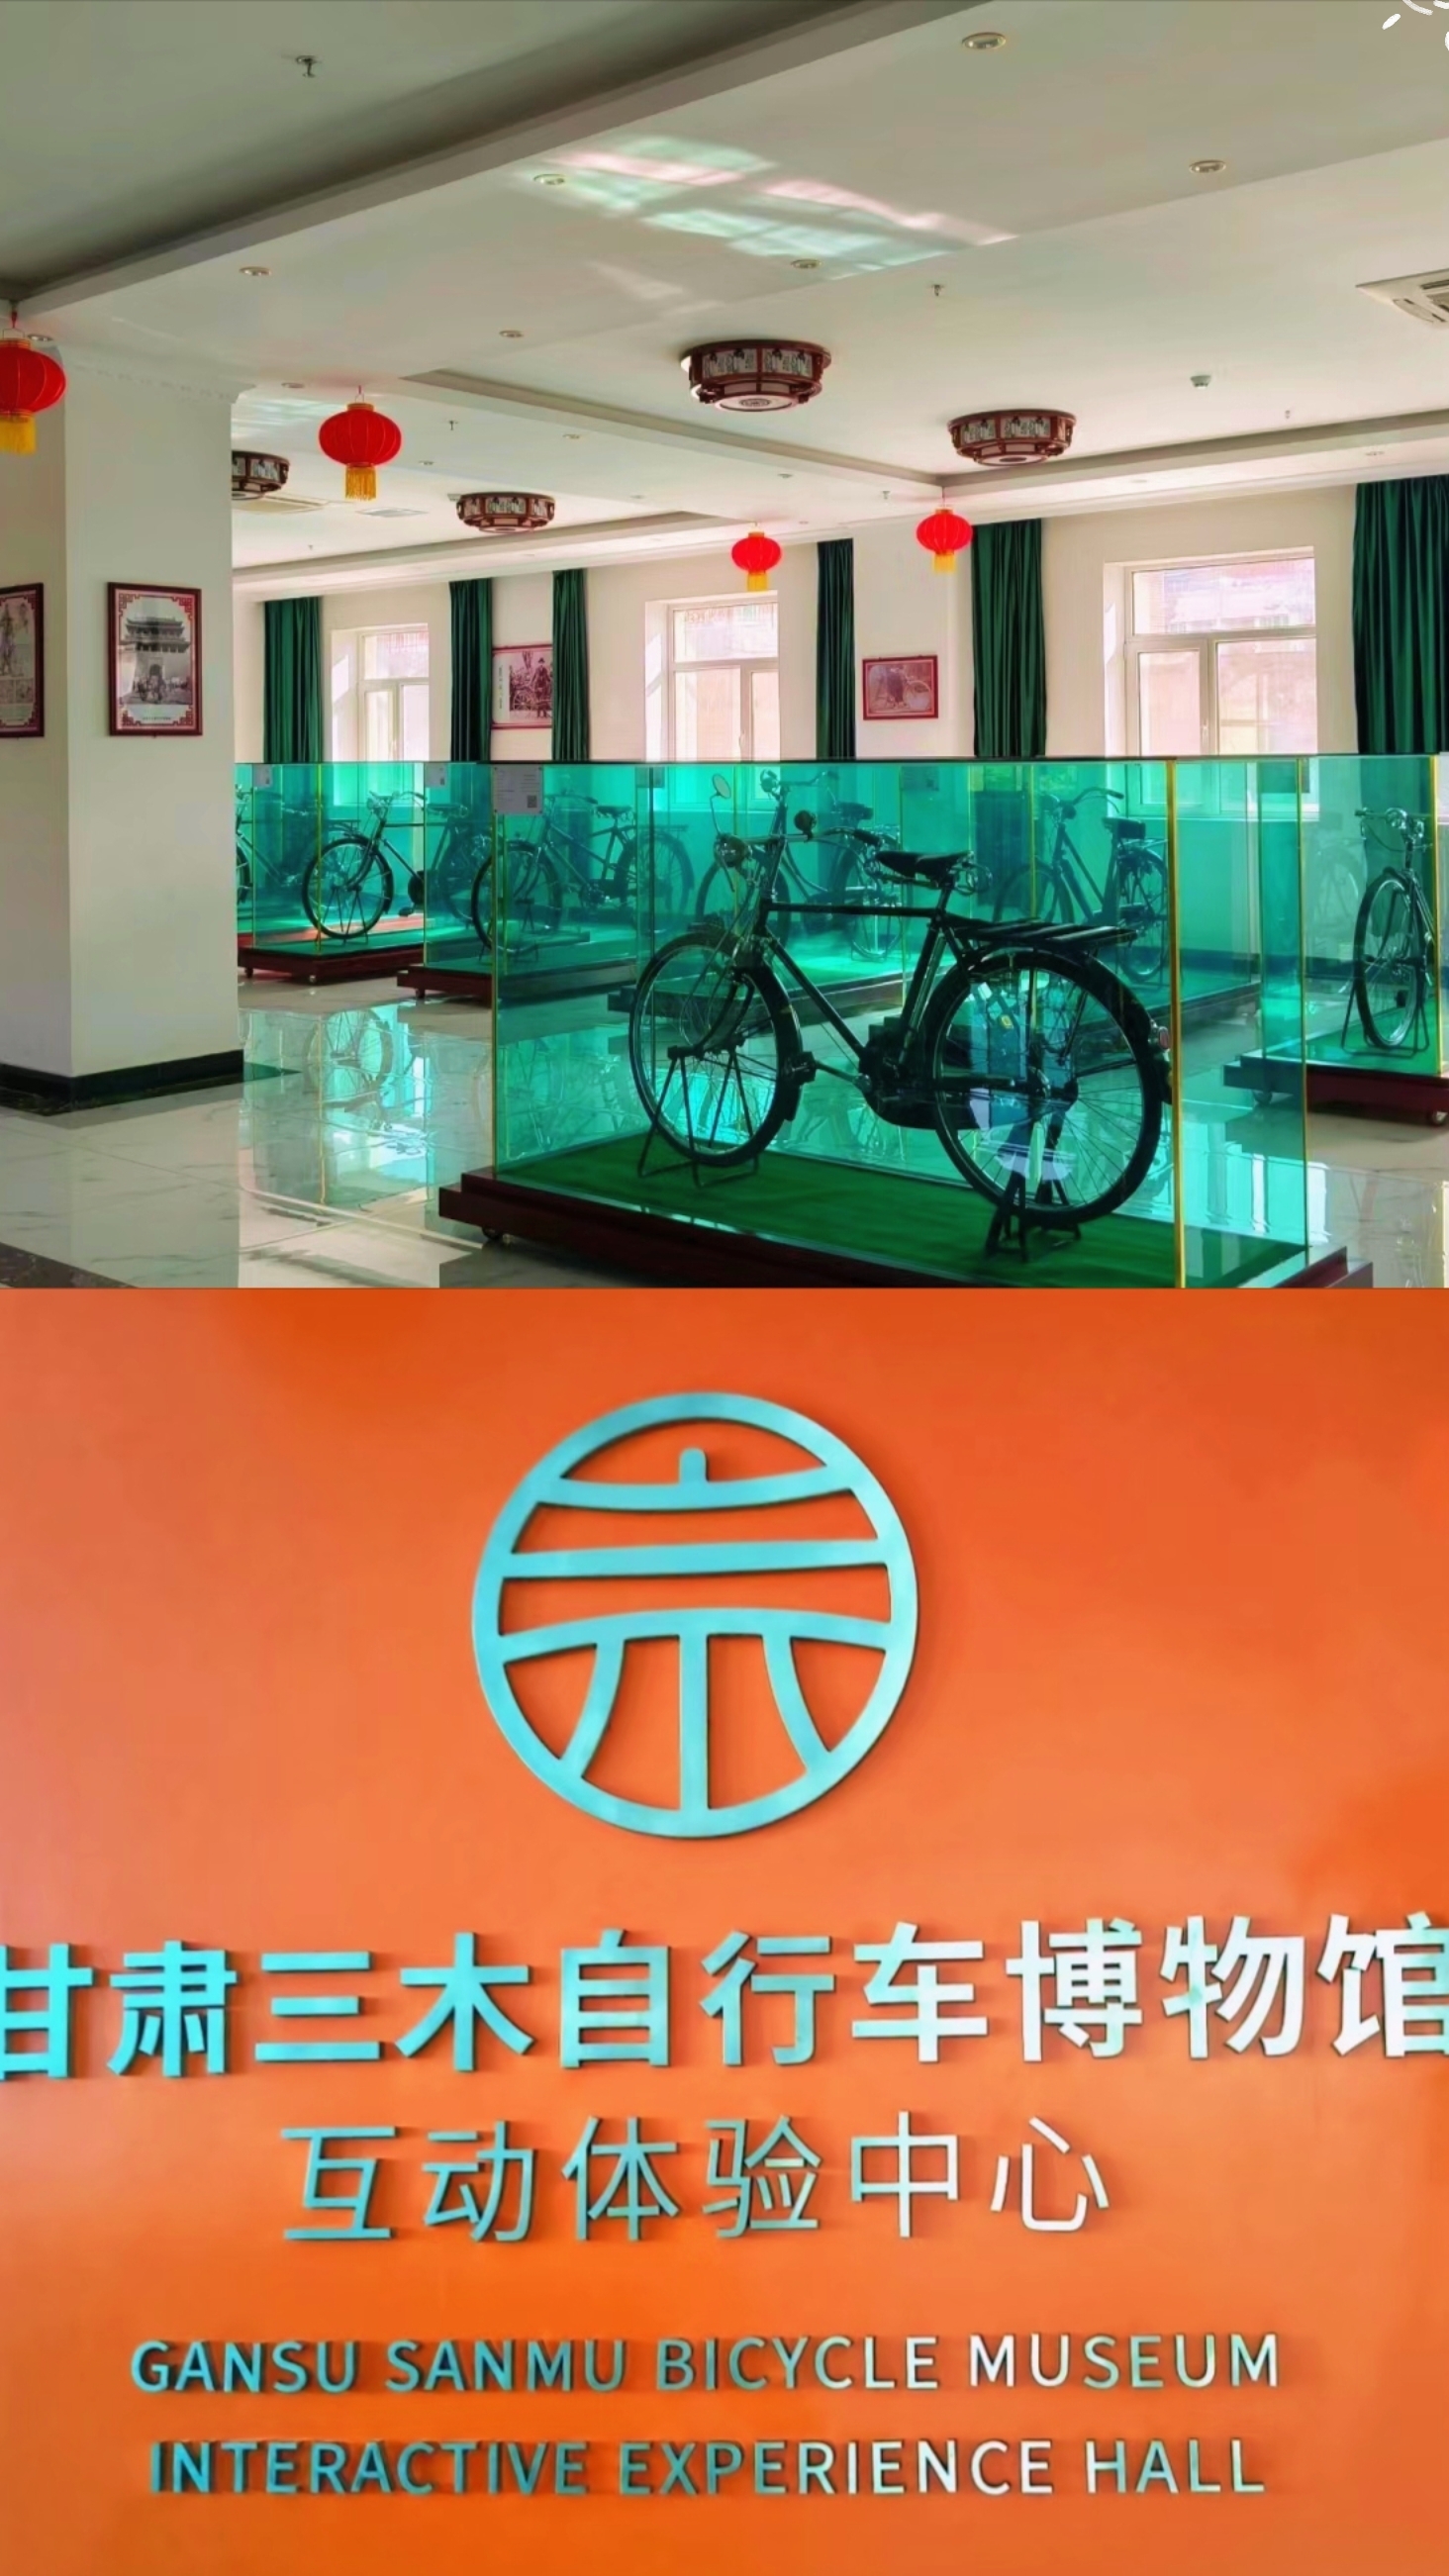 全世界最大的自行车博物馆“甘肃三木自行车博物馆”